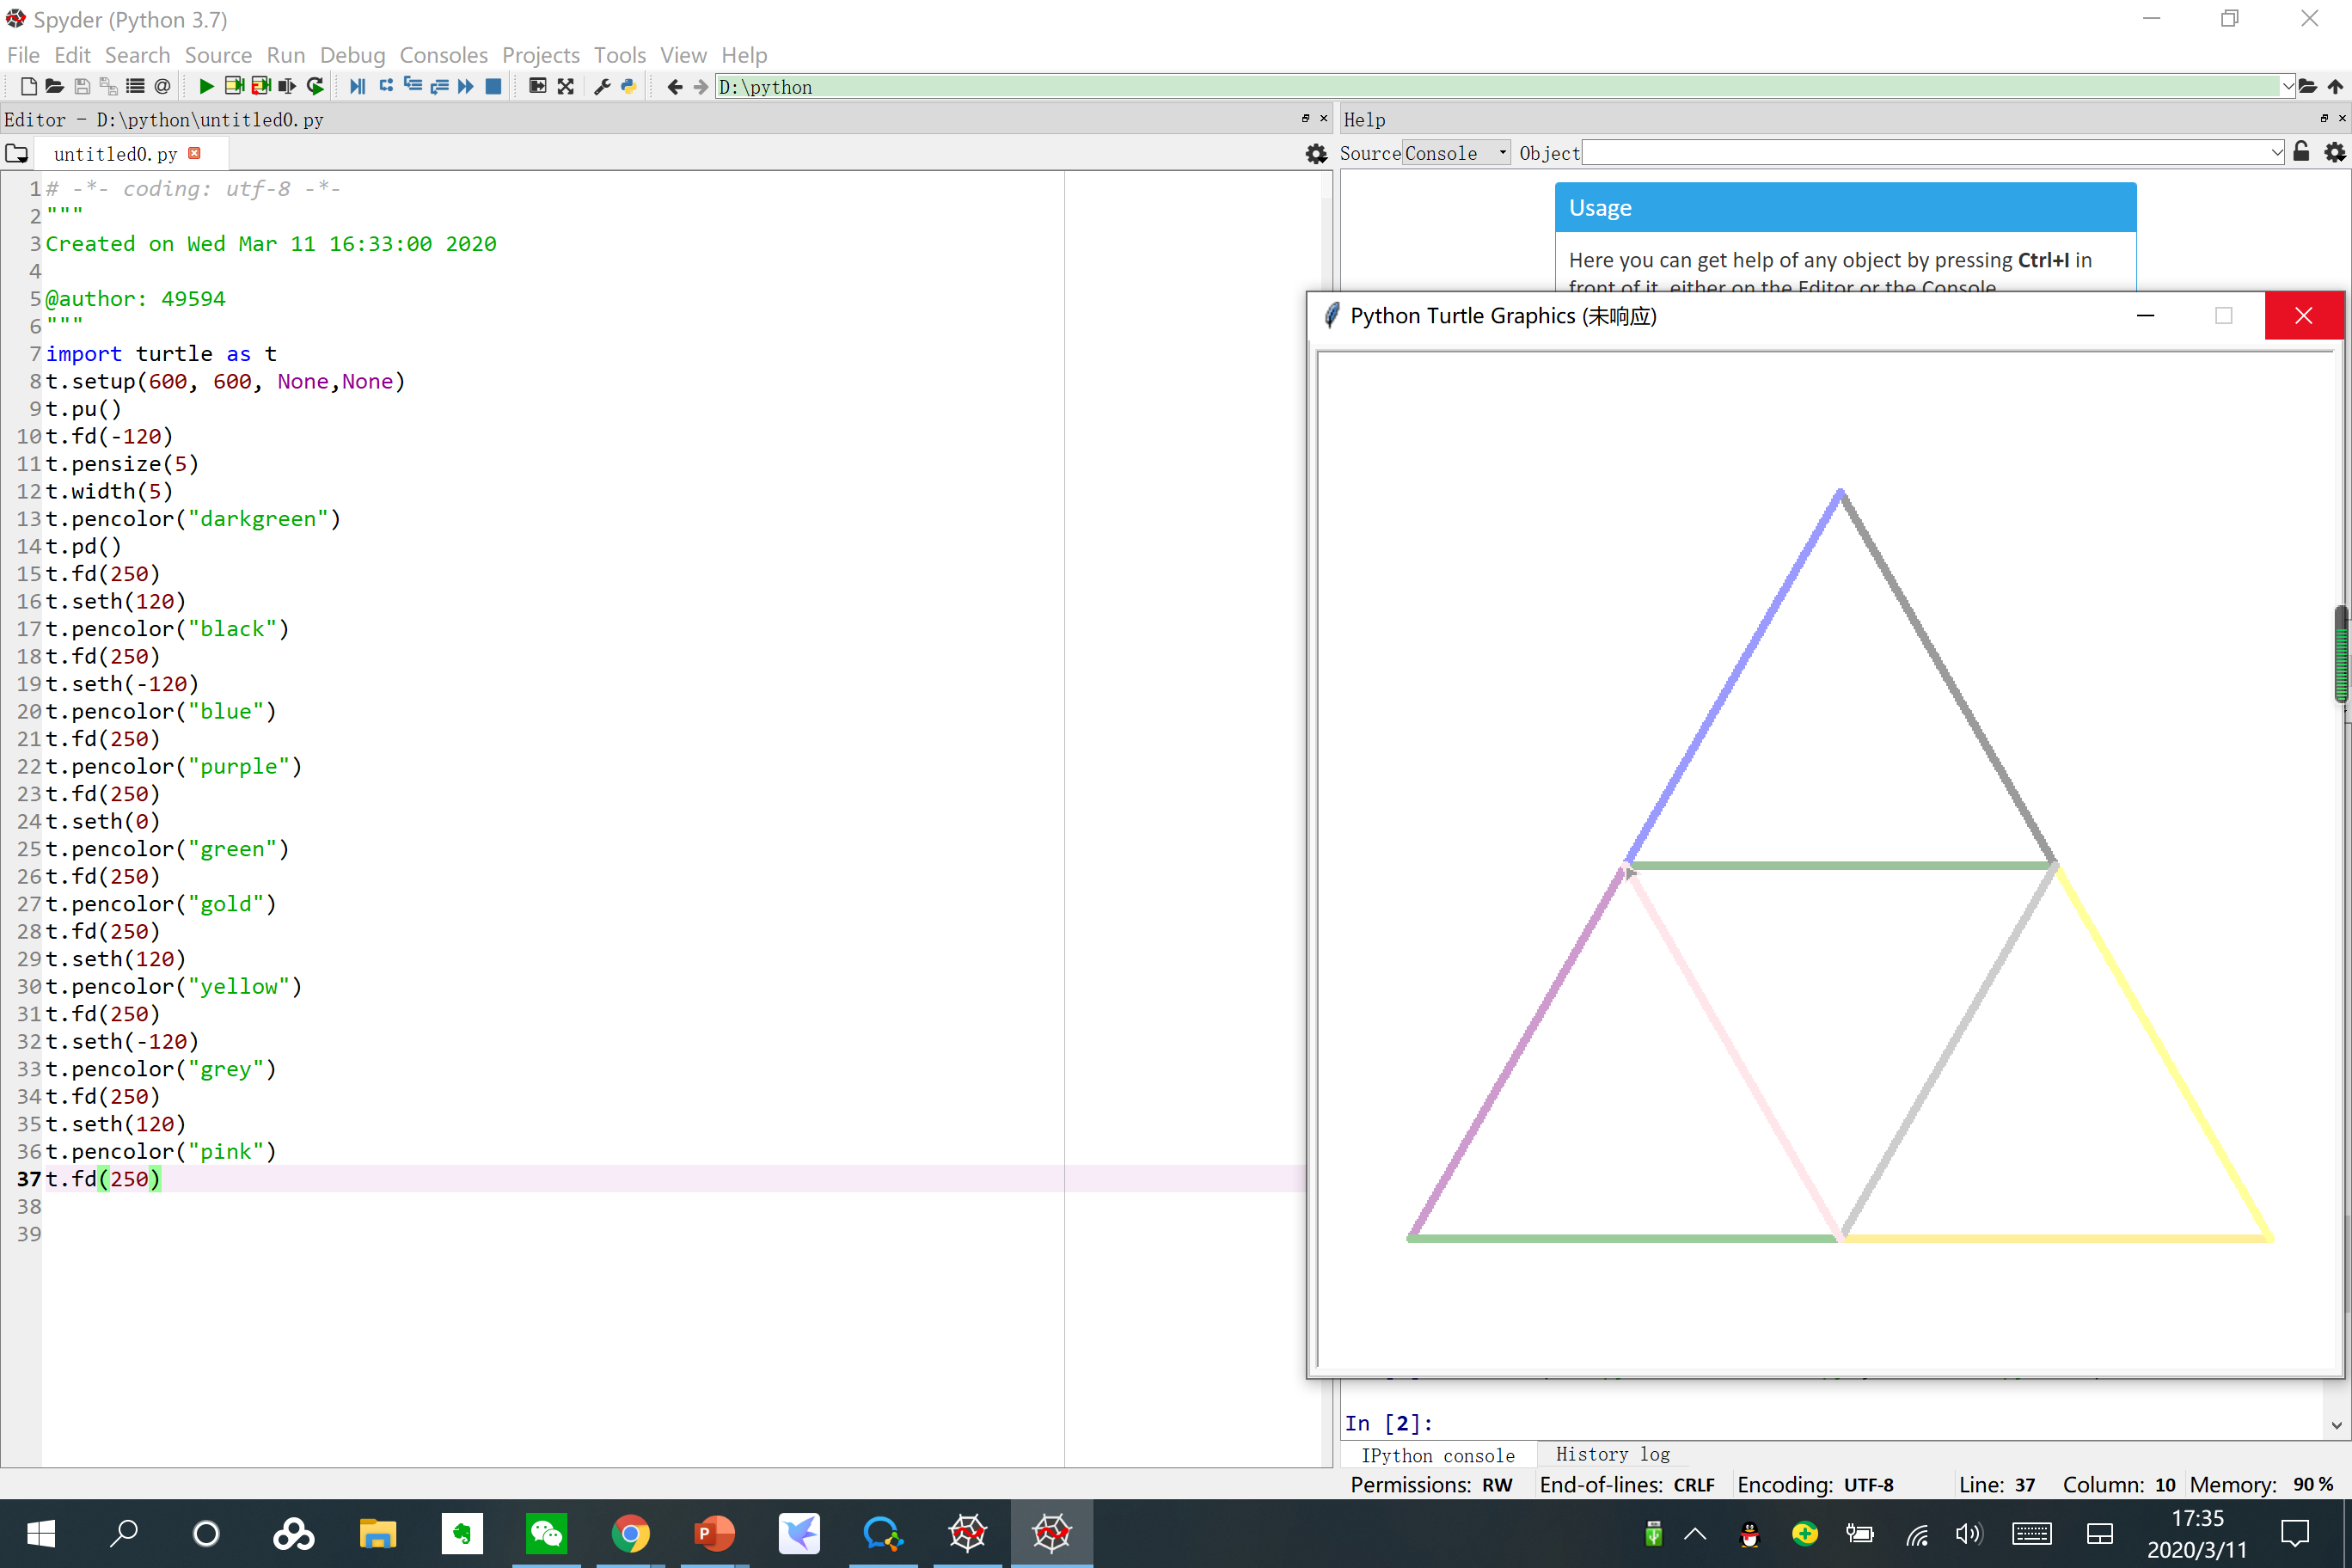 引入等边三角形投影  ‪‬‪‬‪‬‪‬‪‬‮‬‪‬‮‬‪‬‪‬‪‬‪‬‪‬‮‬‫‬‭‬‪‬‪‬‪‬‪‬‪‬‮‬‫‬‫‬‪‬ ‪‬‪‬‪‬‪‬‮‬‭‬‫‬‪‬‪‬‪‬‪‬‪‬‮‬‫‬‫‬‪‬‪‬‪‬‪‬‪‬‮‬‫‬‮‬  描述 使用龟库绘制一个叠加等边三角形